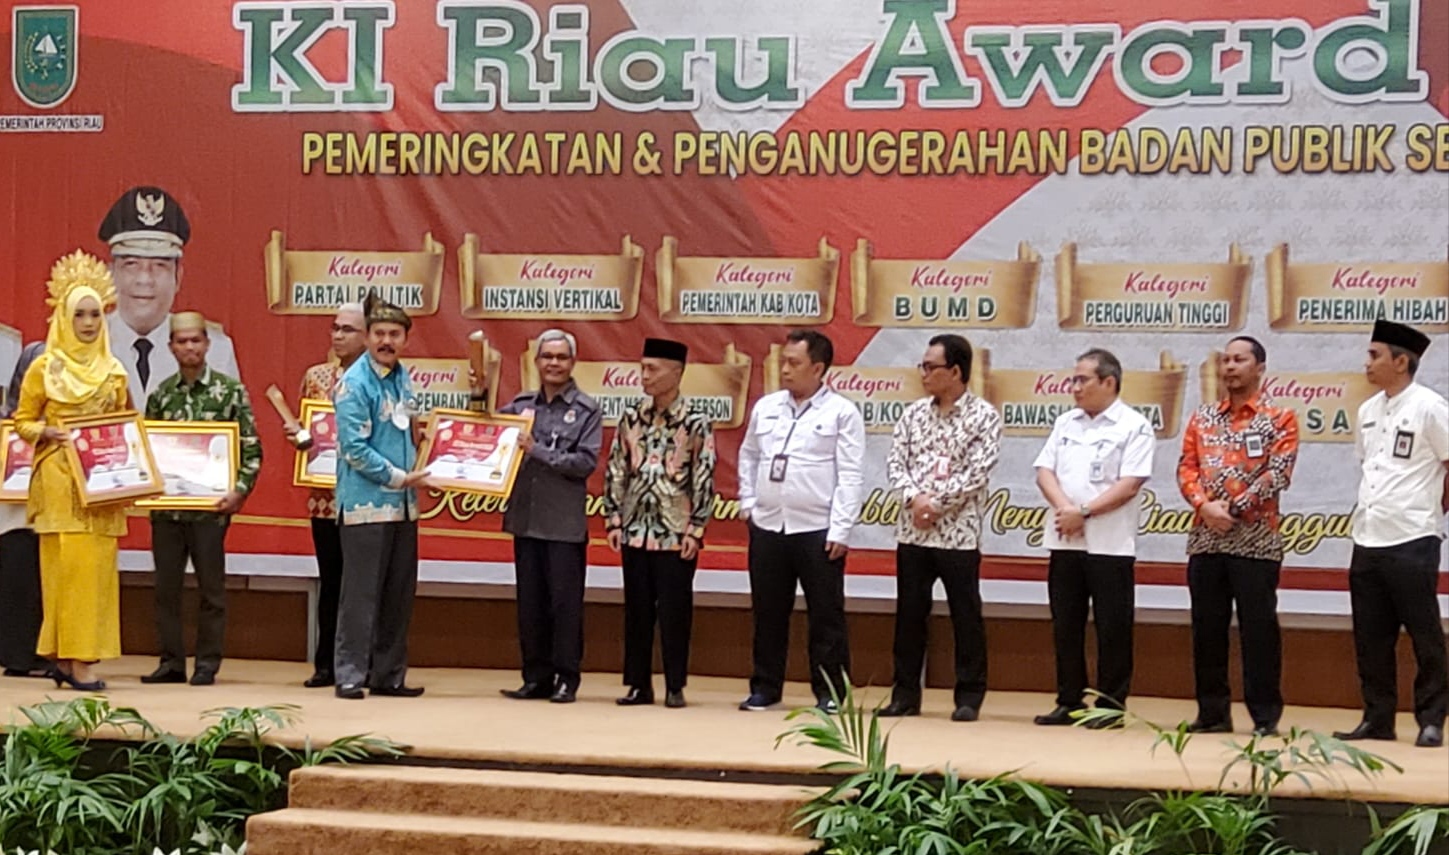 Saat penyerahan KI Award Riau 2022